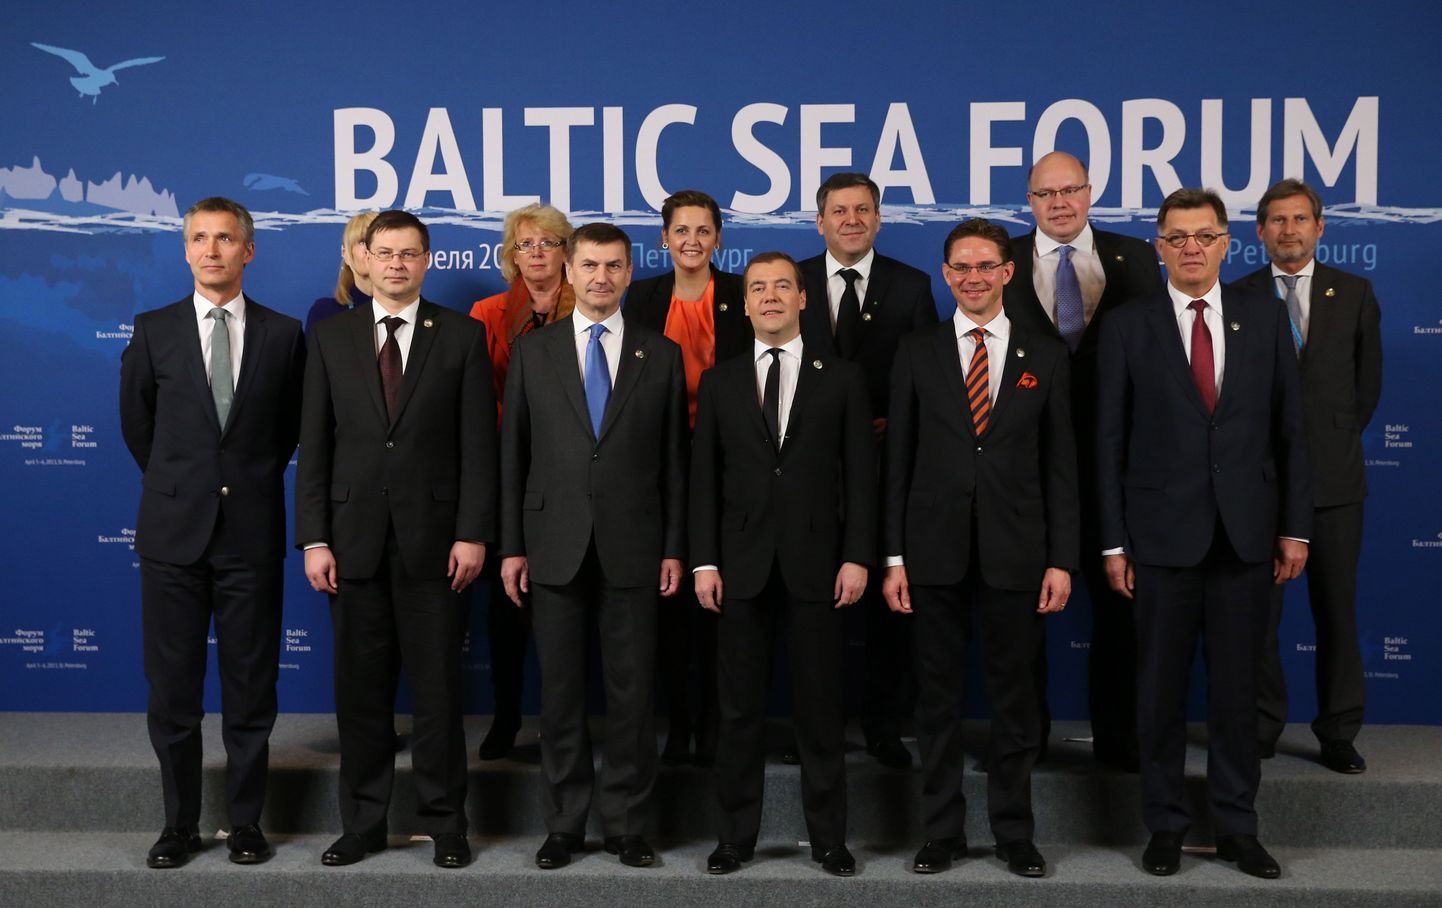 В первом ряду слева направо: Йенс Столтенберг (Норвегия), Валдис Домбровскис (Латвия), Андрус Ансип (Эстония), Дмитрий Медведев (Россия), Юрки Катайнен (Финляндия), Альгирдас Буткевичус (Литва)